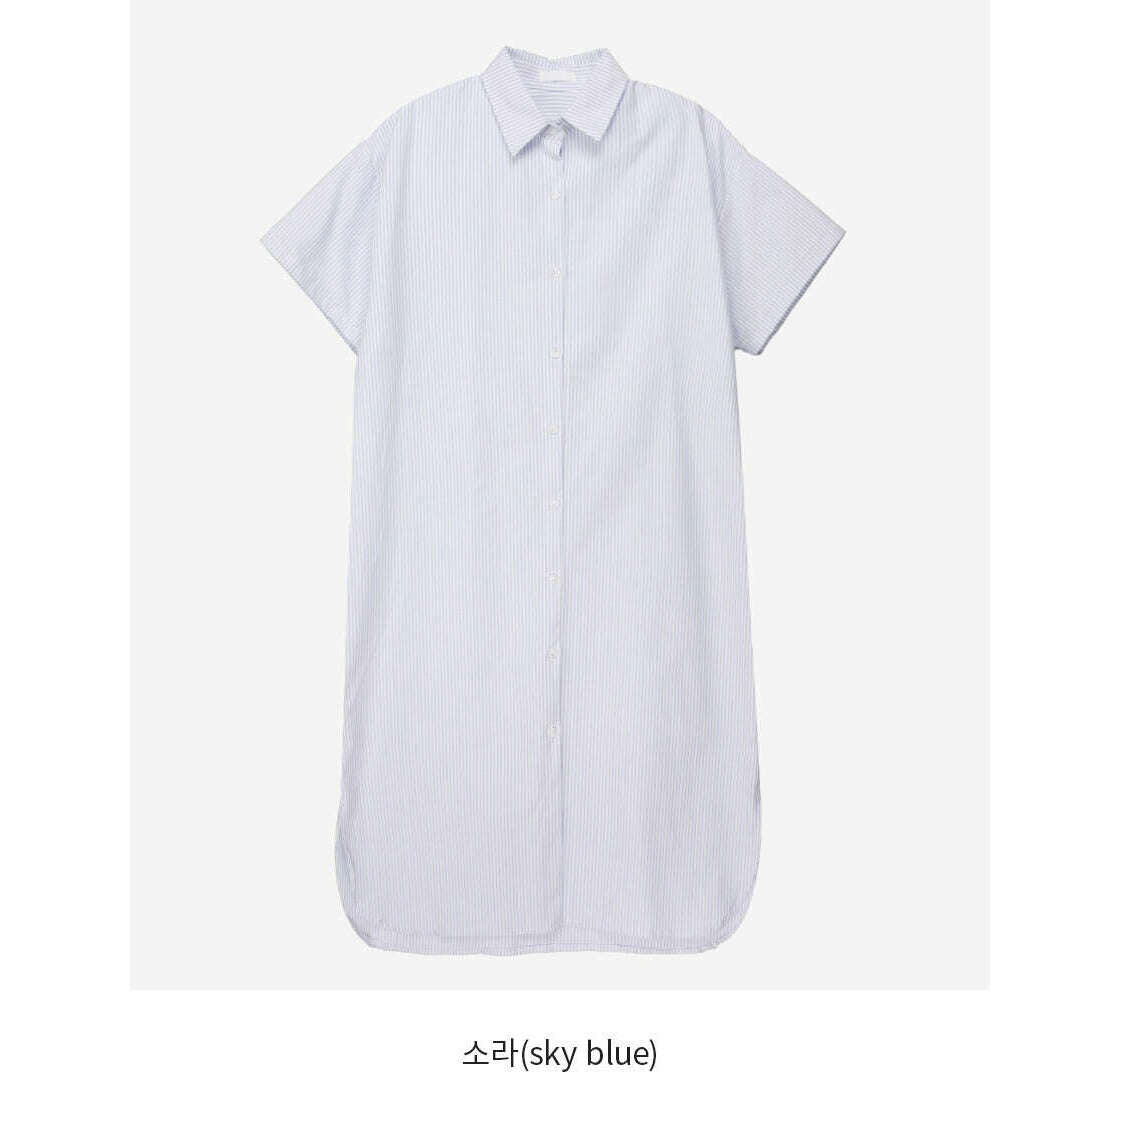 MUMMY.cc:條紋短袖襯衫寬鬆連身裙